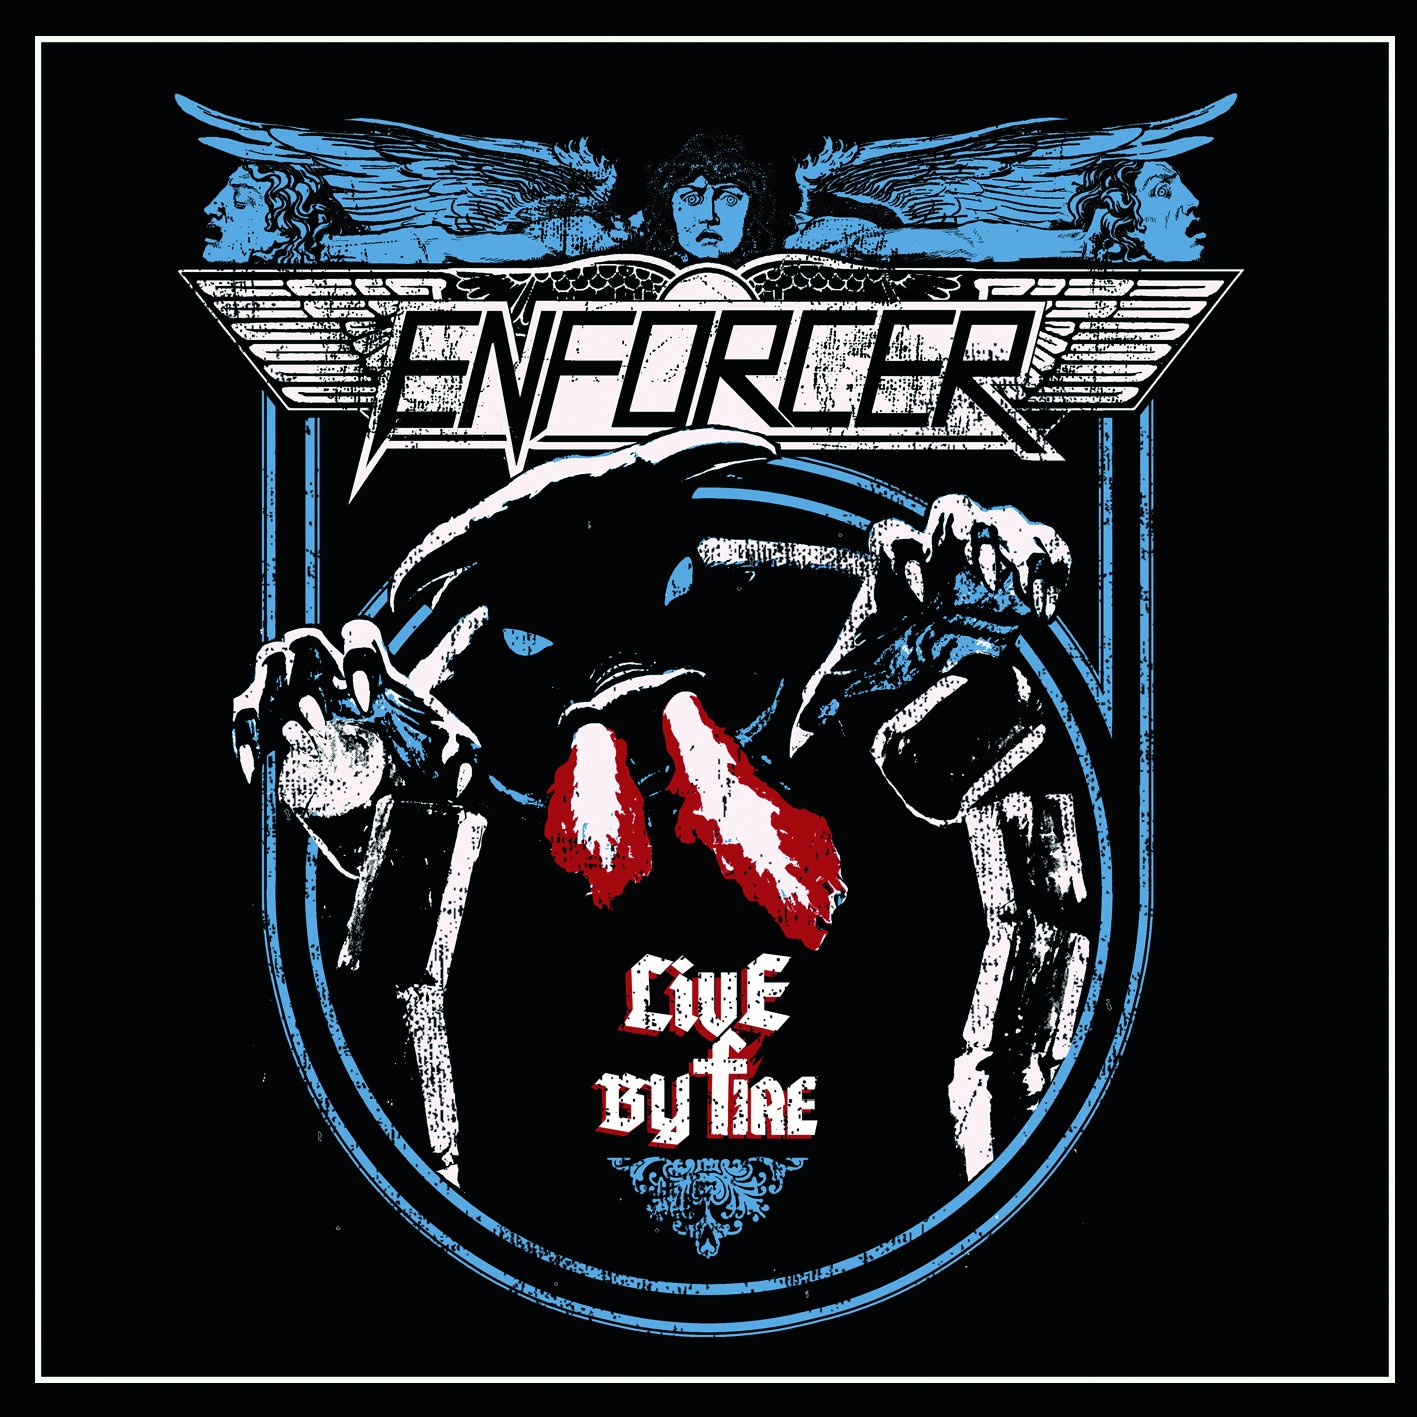 Music Dvd Enforcer - Live By Fire (Dvd+Cd) NUOVO SIGILLATO, EDIZIONE DEL 09/12/2015 SUBITO DISPONIBILE